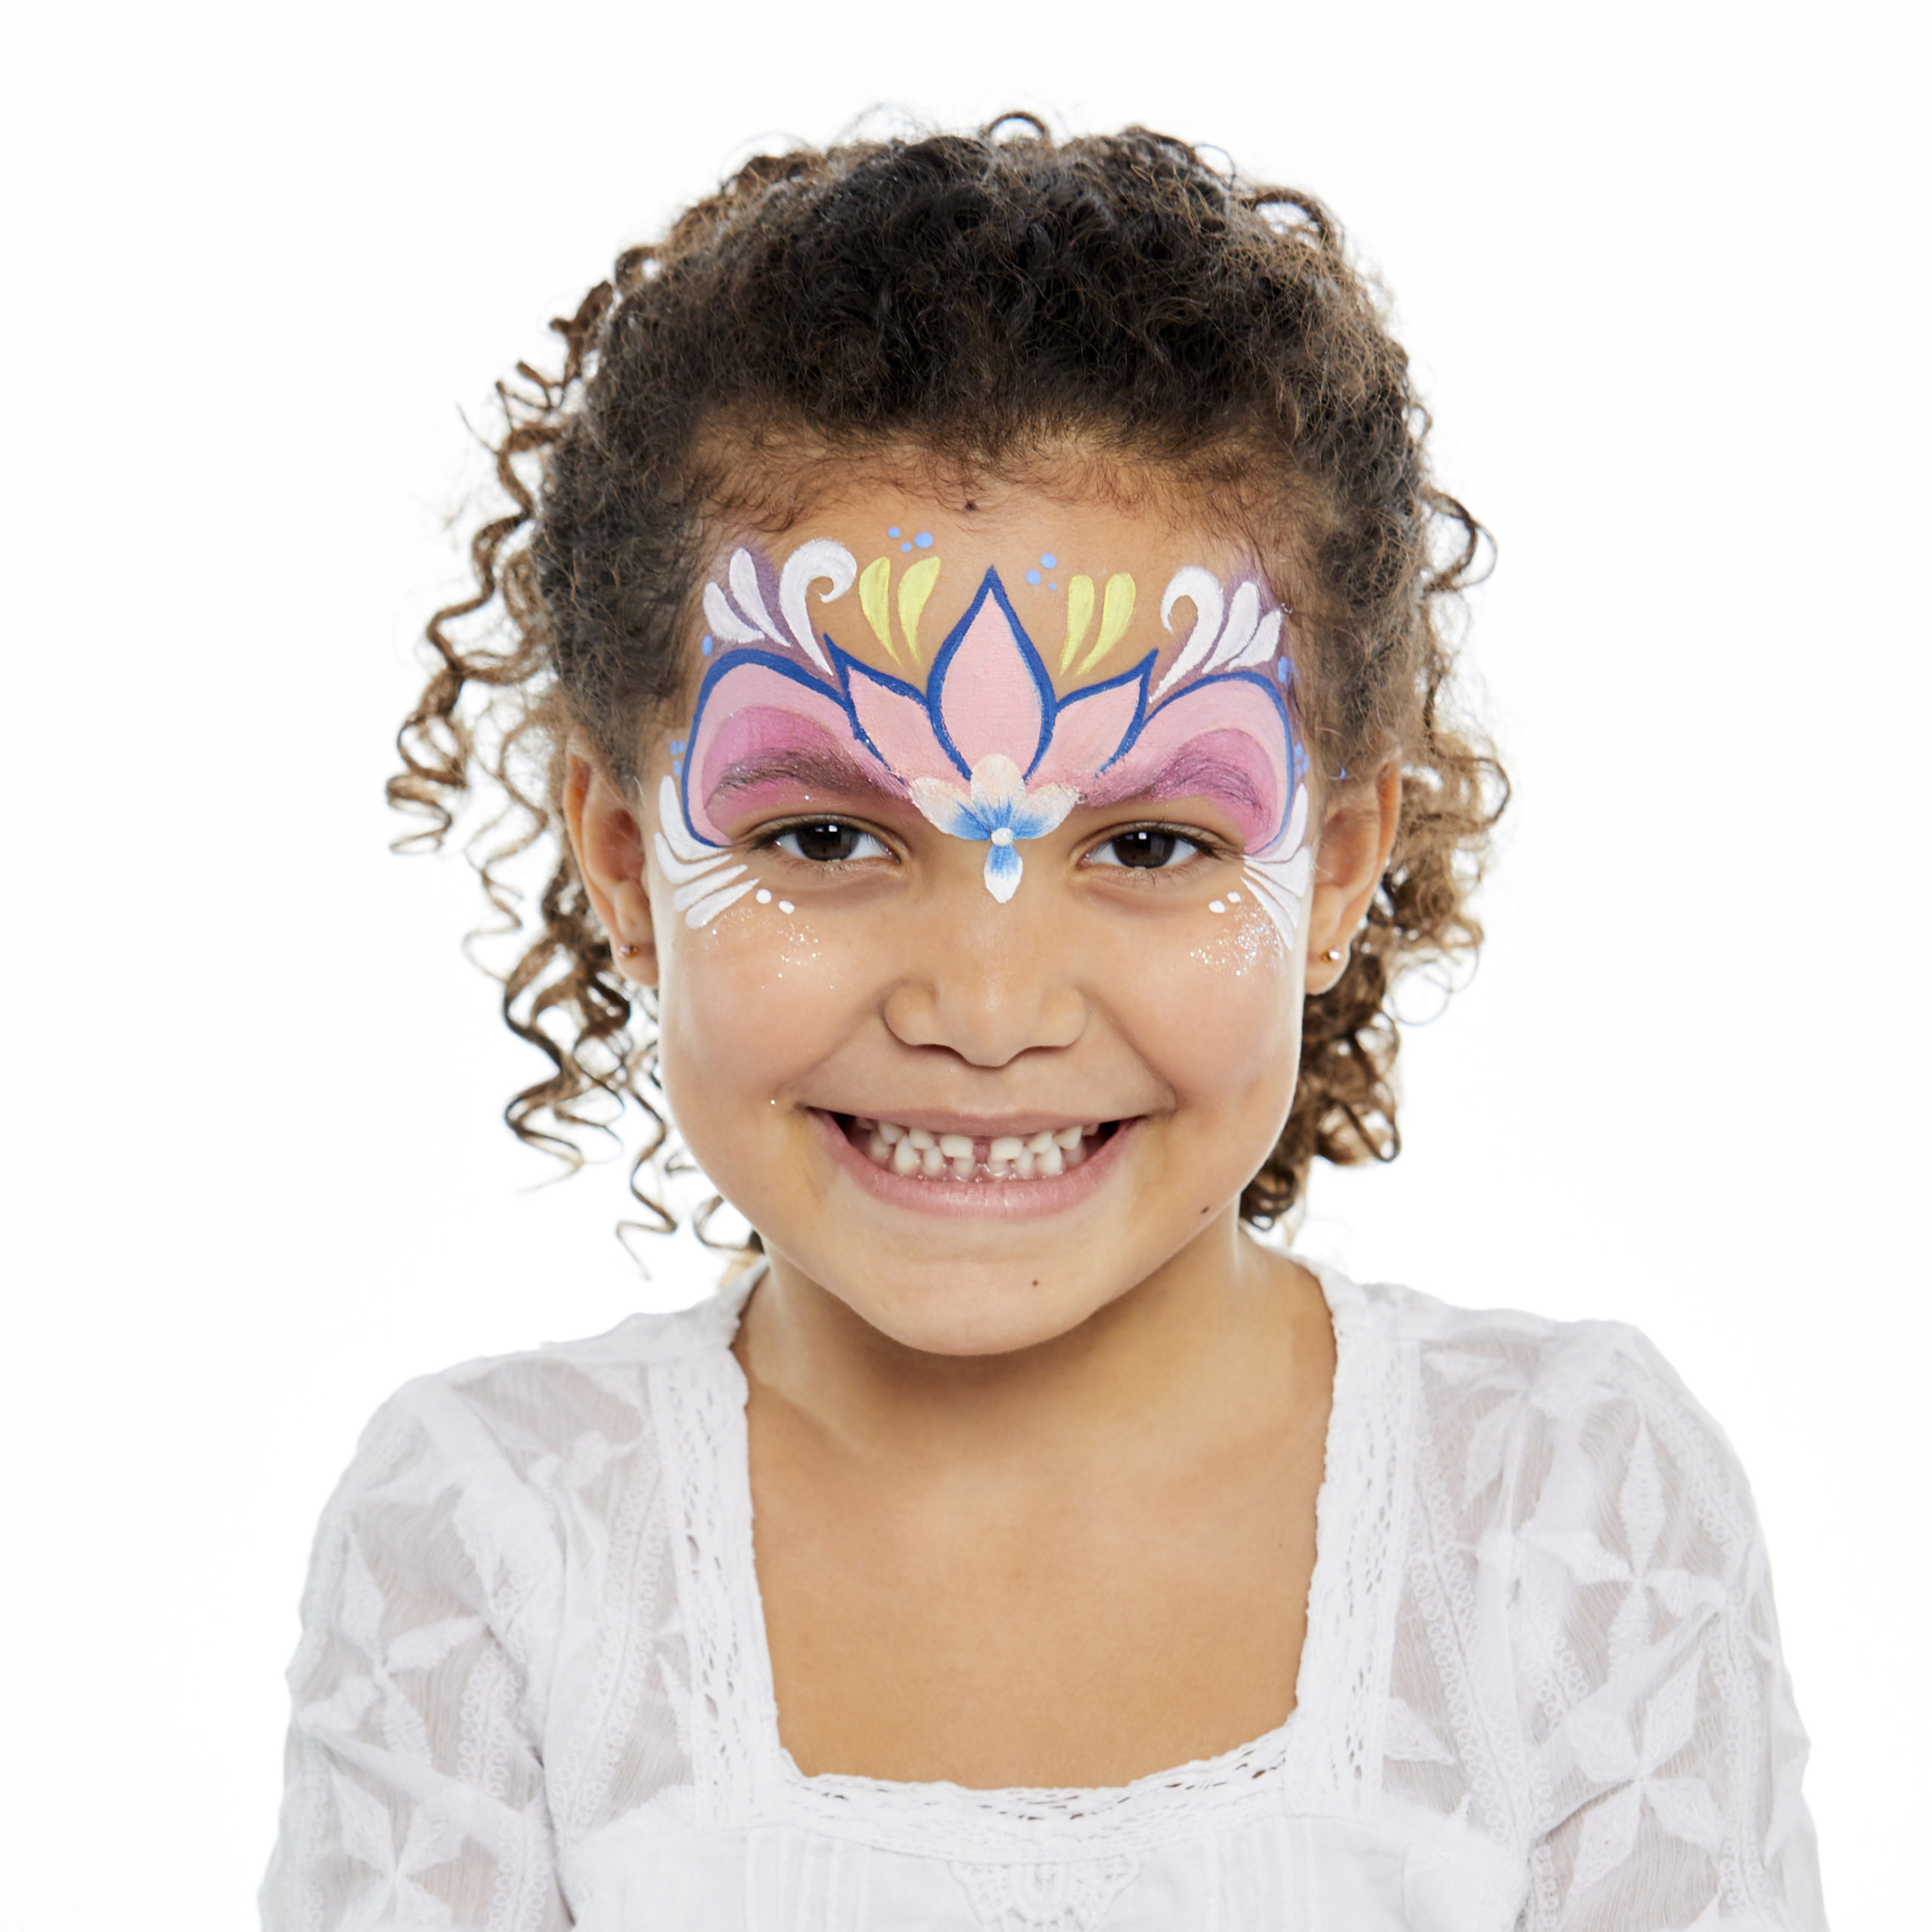 Snazaroo Mini Face Paint Theme Pack, Ice Fairy